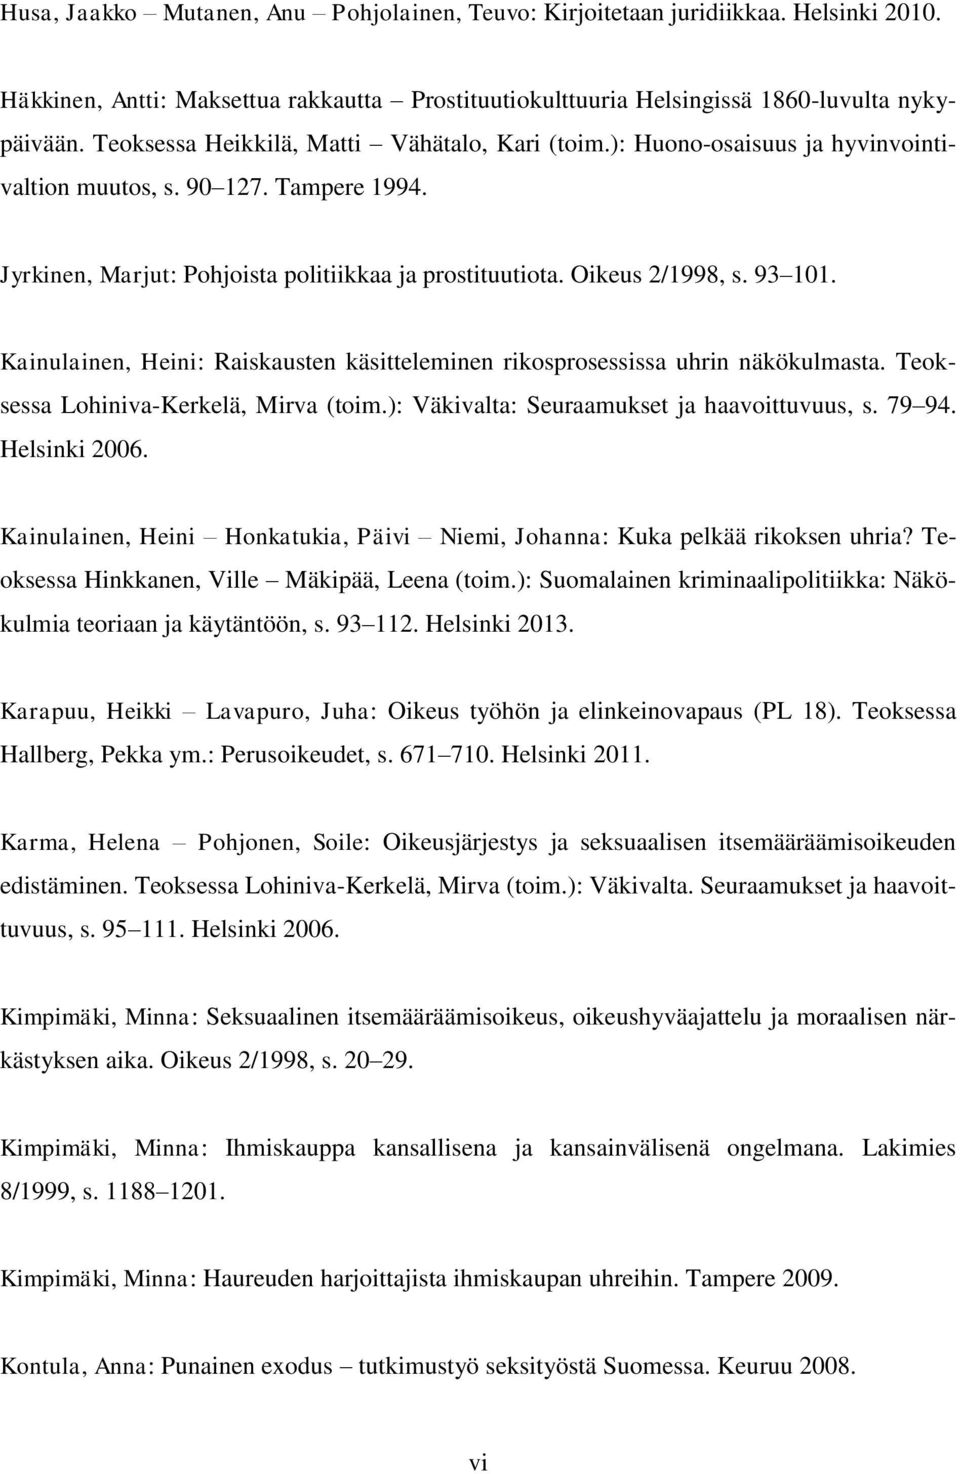 93 101. Kainulainen, Heini: Raiskausten käsitteleminen rikosprosessissa uhrin näkökulmasta. Teoksessa Lohiniva-Kerkelä, Mirva (toim.): Väkivalta: Seuraamukset ja haavoittuvuus, s. 79 94.